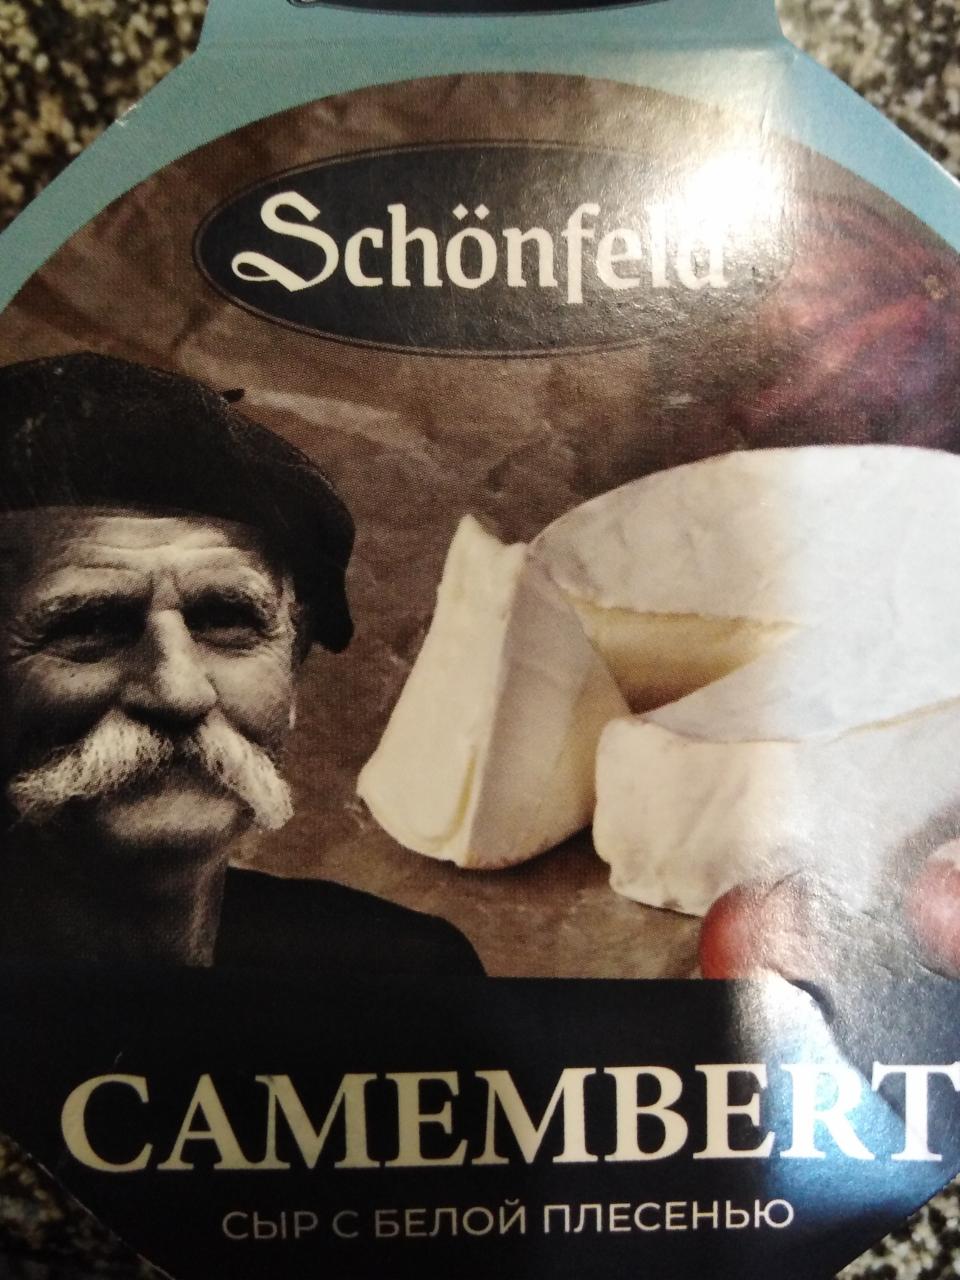 Фото - Сыр мягкий с белой плесенью Camembert Schonfeld